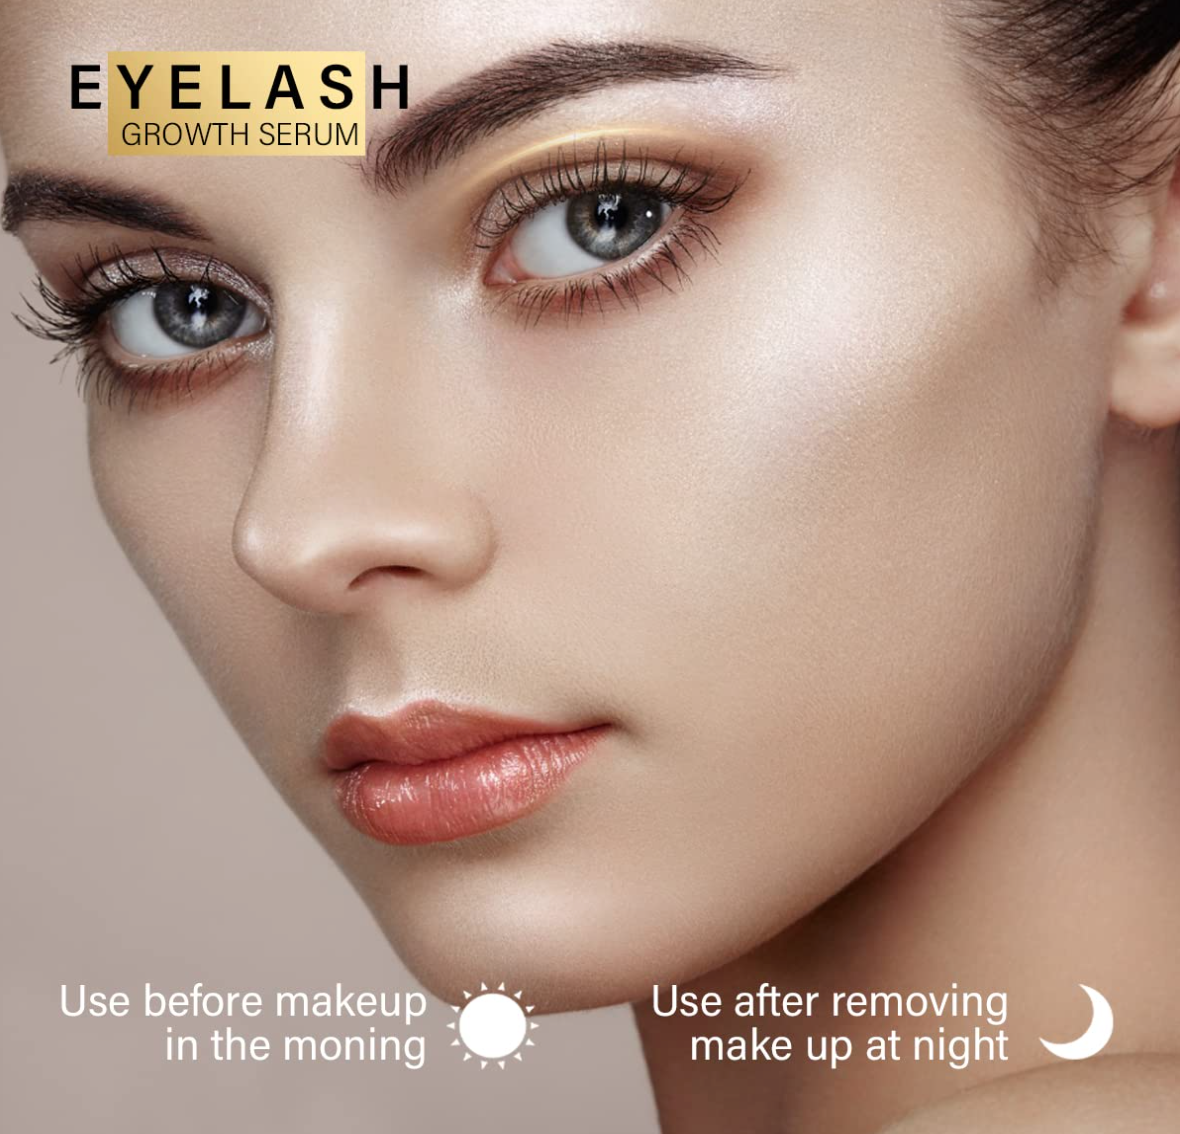 Premium Eyelash Growth Serum - 5ml Fuller & Longer Looking Eyelashes Lash Enhancing Serum for Natural Lashes or Lash Extensions & Brows, Vegan & Cruelty-Free gold